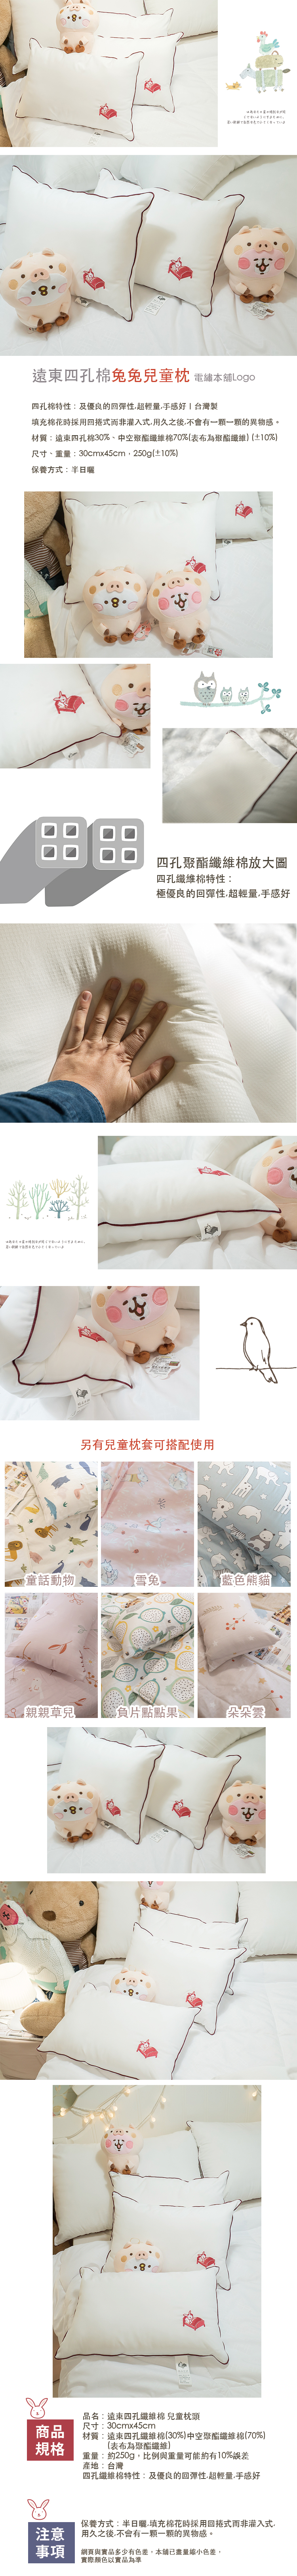 新光四孔纖維棉兒童枕頭+兒童枕套帶本舖電繡LOGO 台灣製